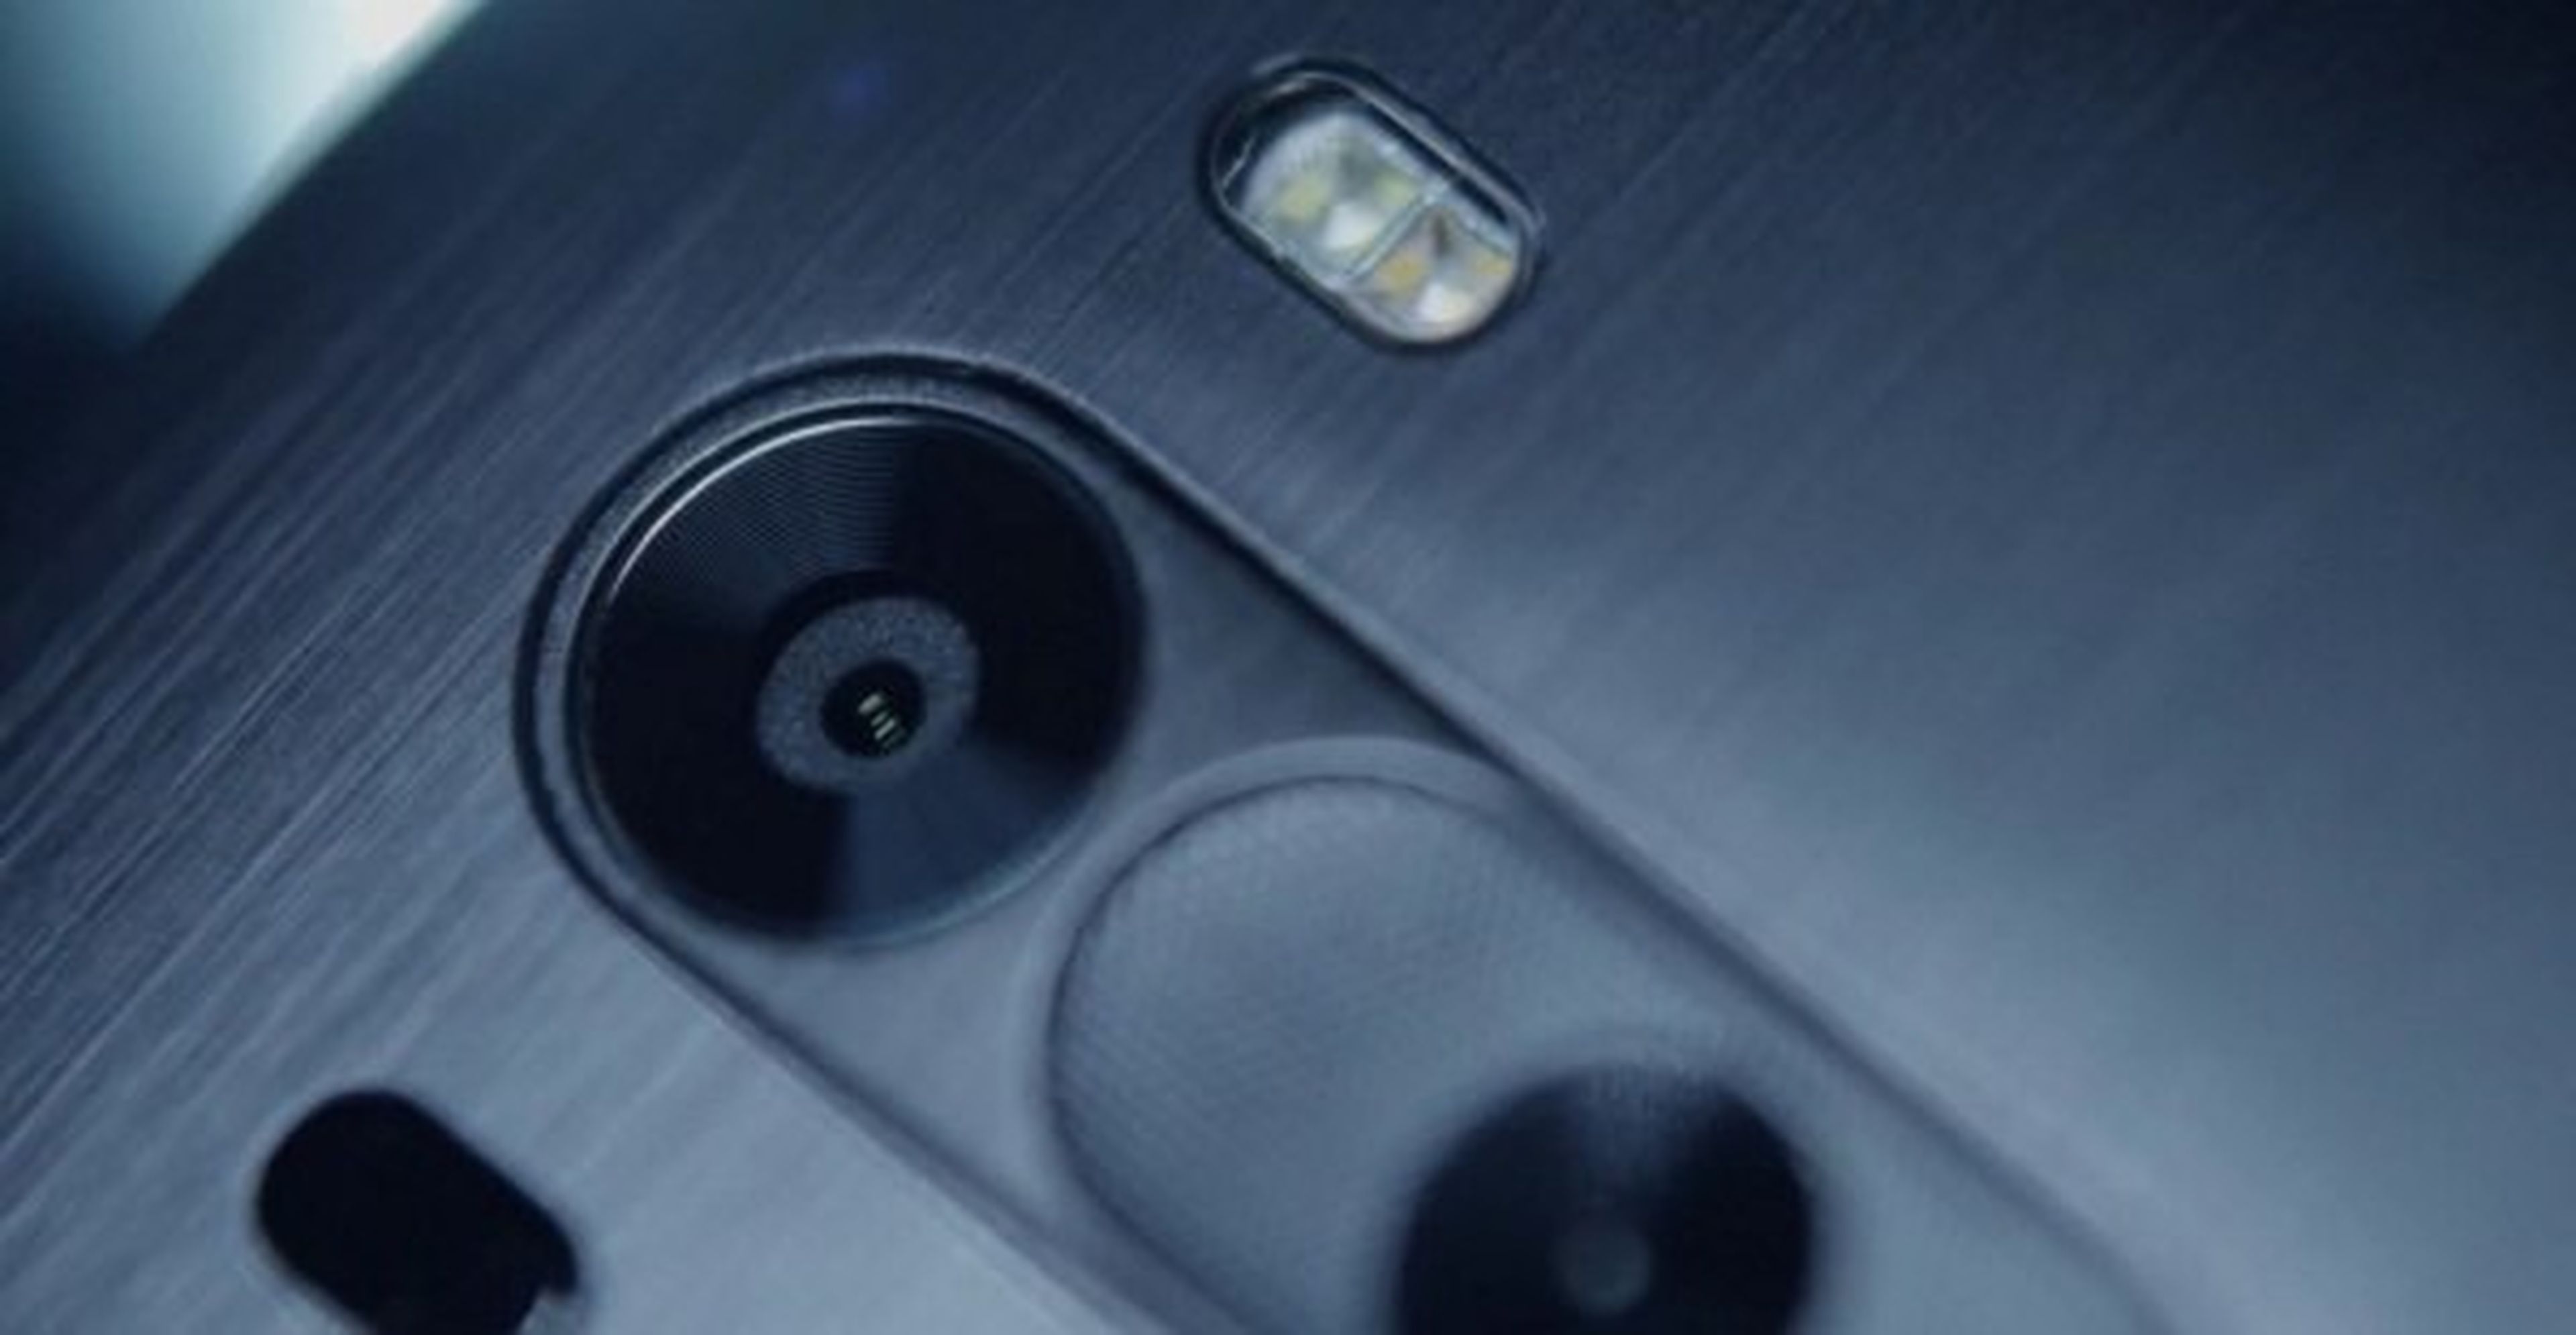 ¿Qué distingue al nuevo LG G3 del resto de smartphones?